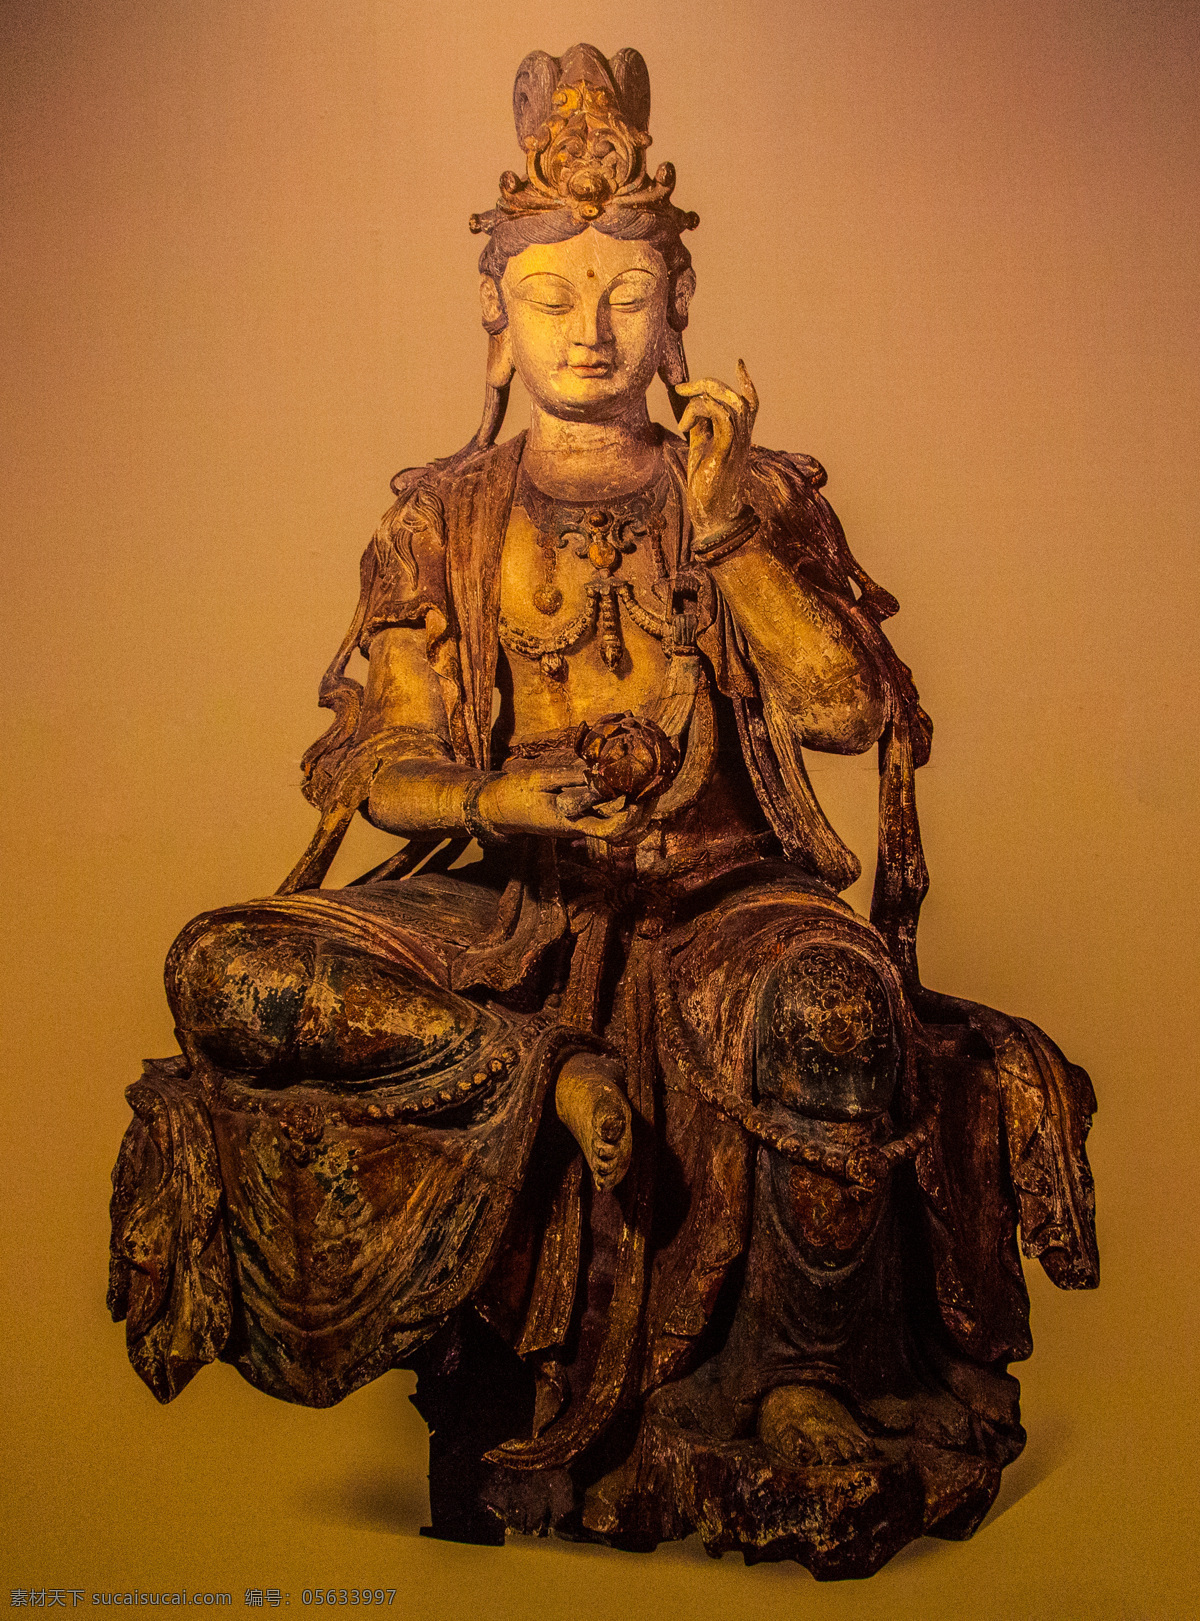 北京 国家博物馆 博物馆 藏品 青铜器 瓷器 陶器 雕像 塑像 旅游风光摄影 旅游摄影 国内旅游 中国